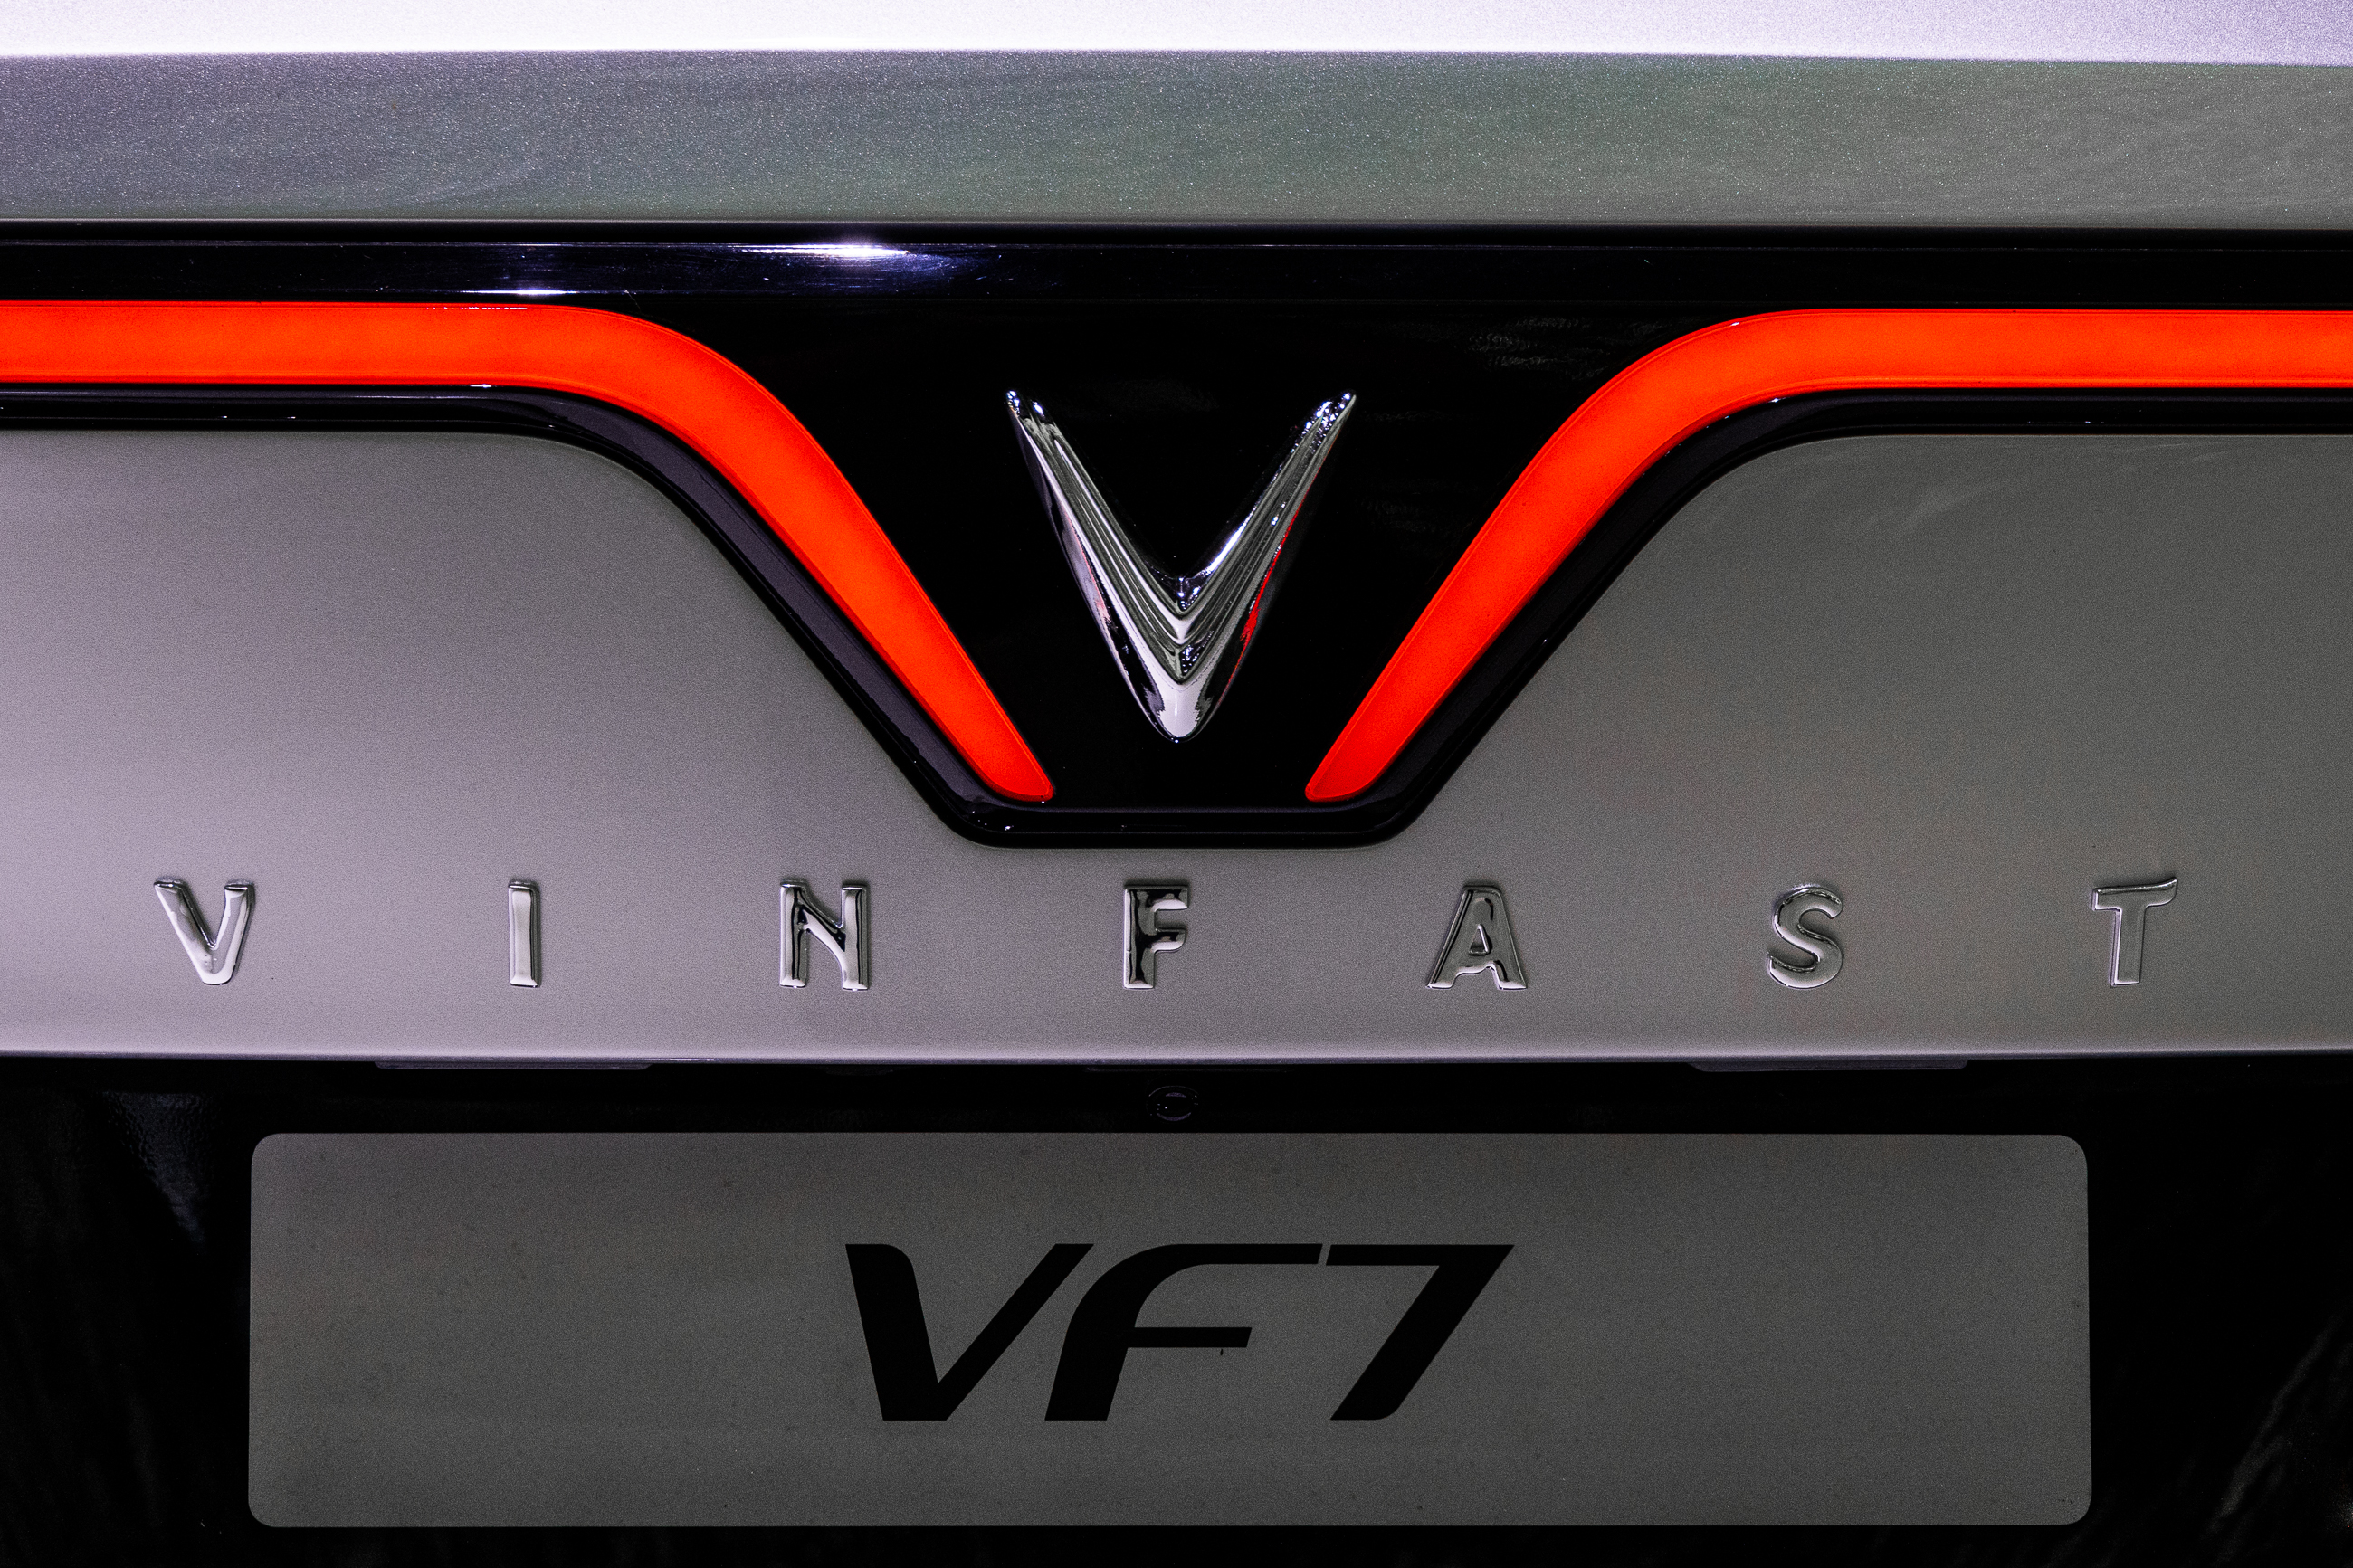 VinFast VF7 khi nào được mở bán? 6n9a7200.jpg